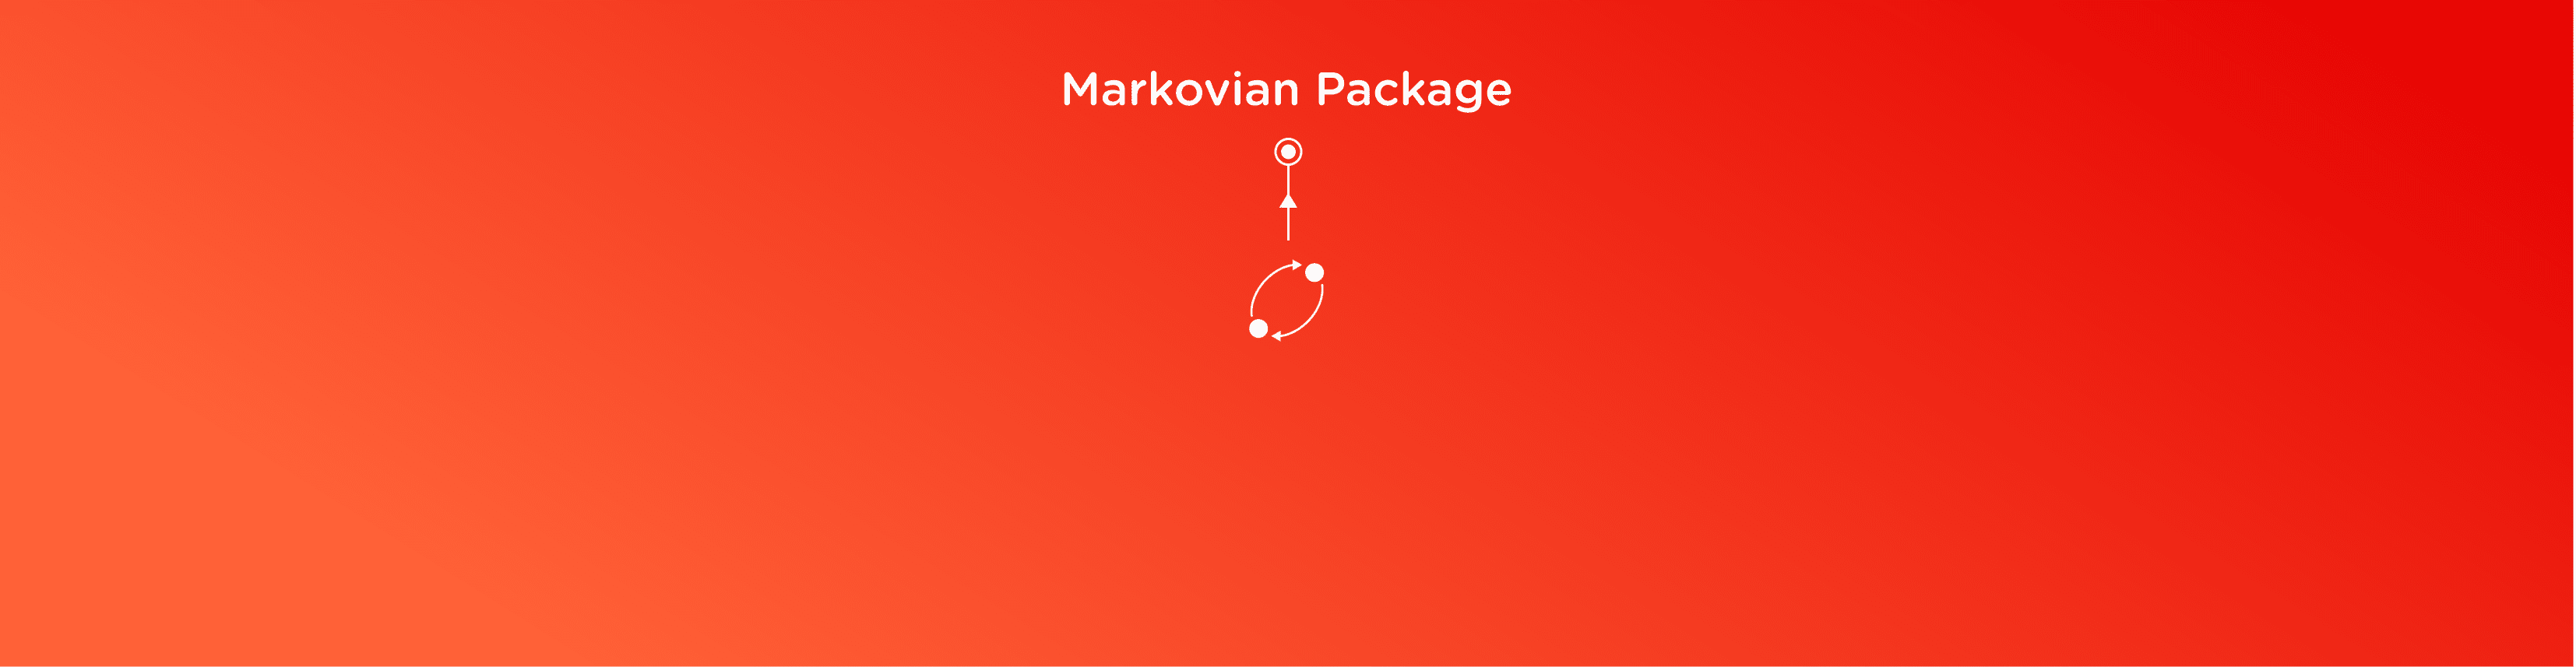 Markovian package 